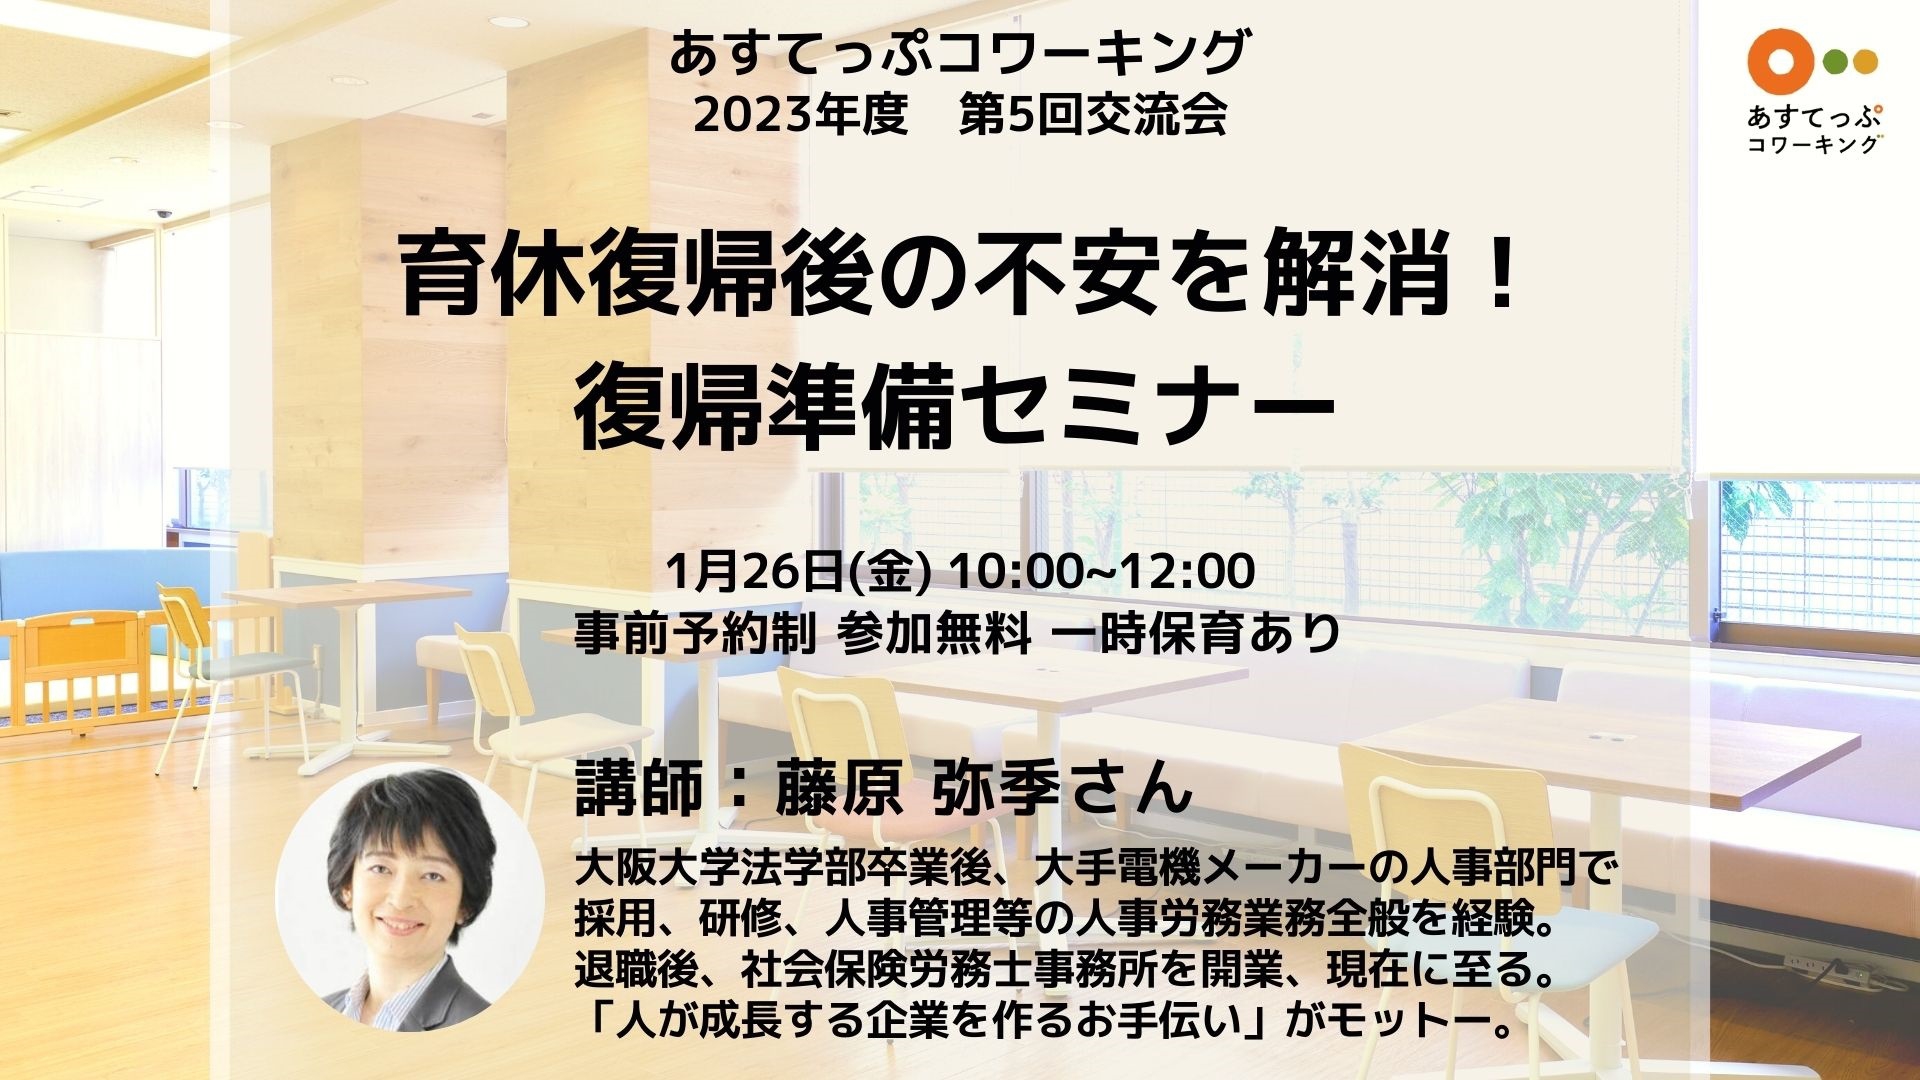 1月26日(金)】あすてっぷ コワーキング 第５回交流会 | 神戸市男女共同 